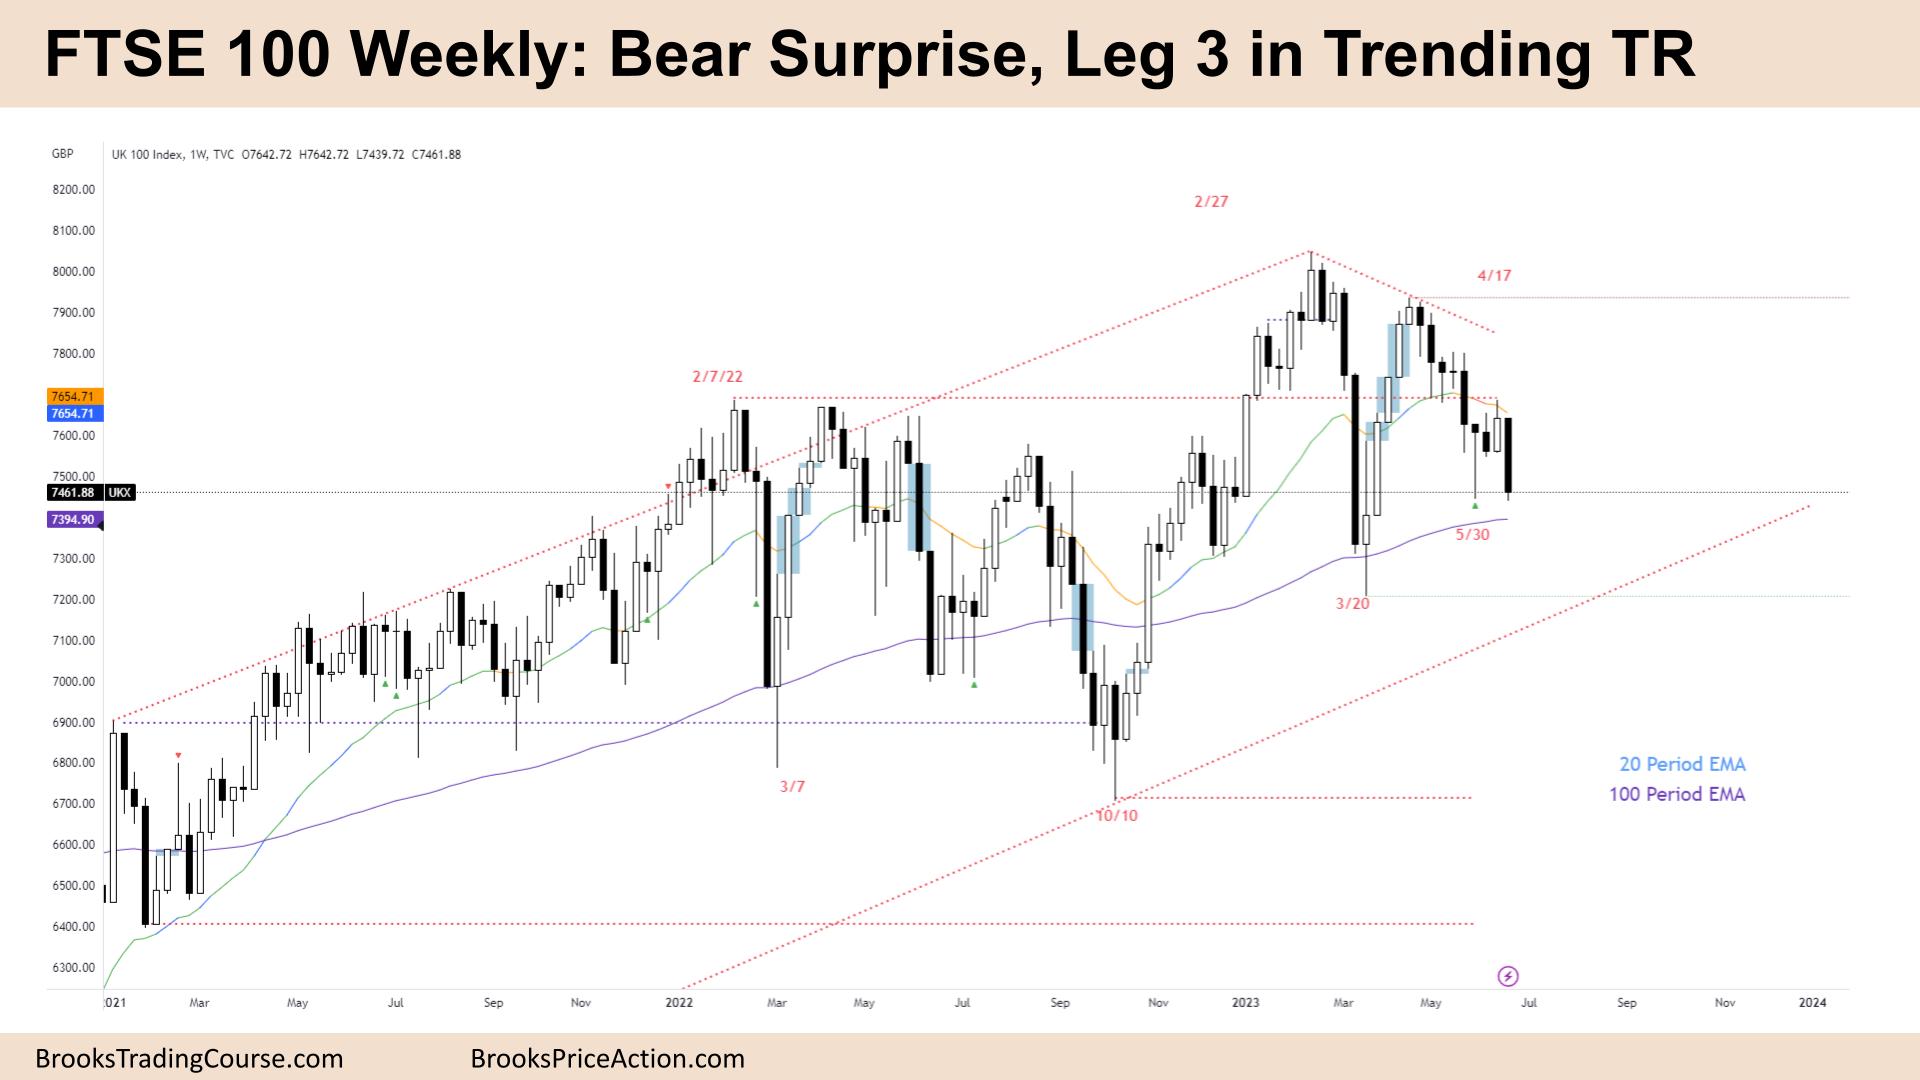 FTSE 100 Bear Surprise Leg 3 in Trending TR